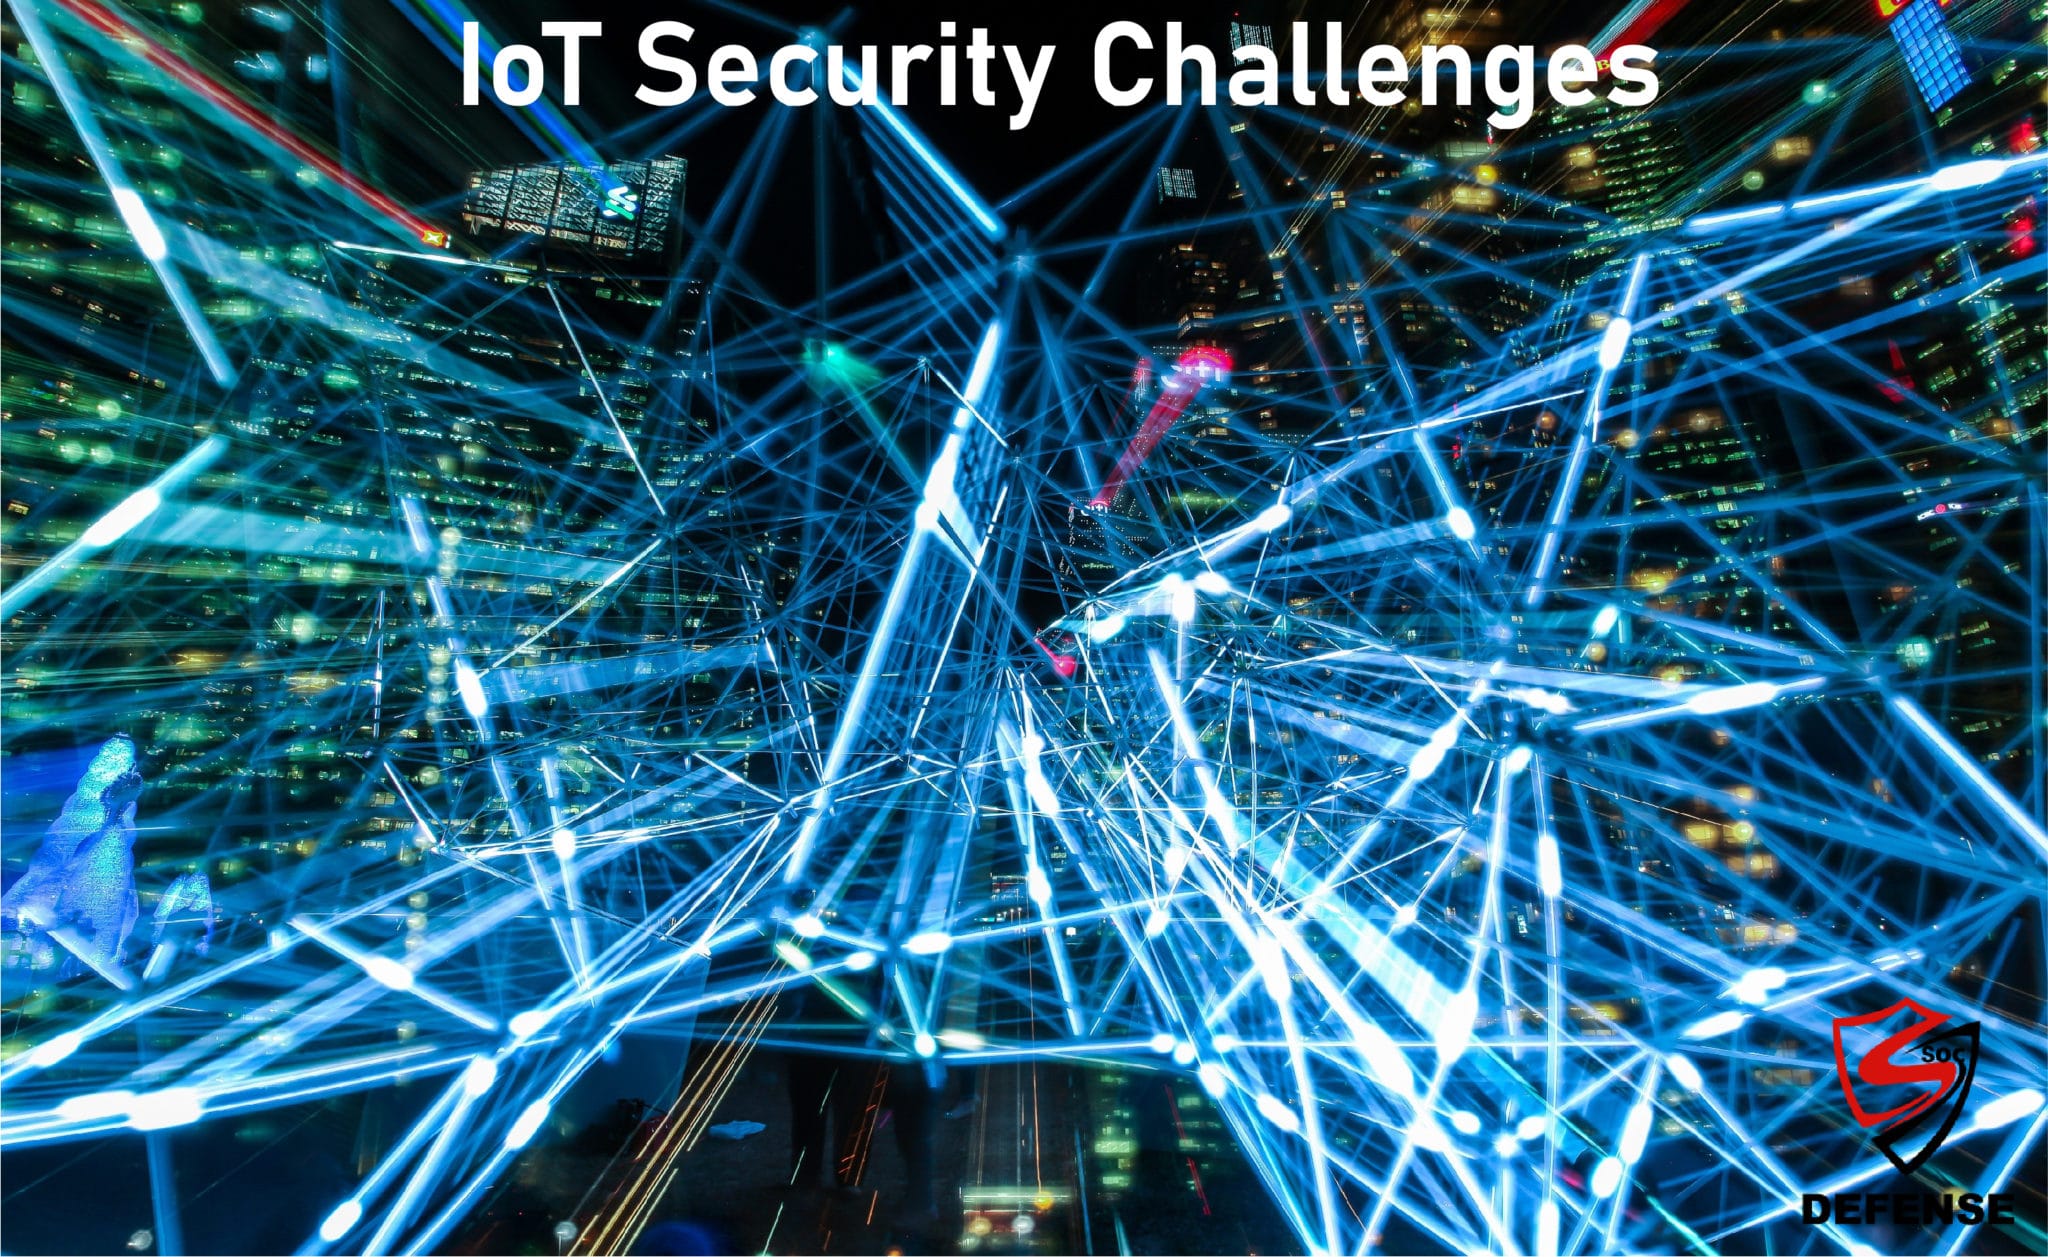 IoT Security Challenges